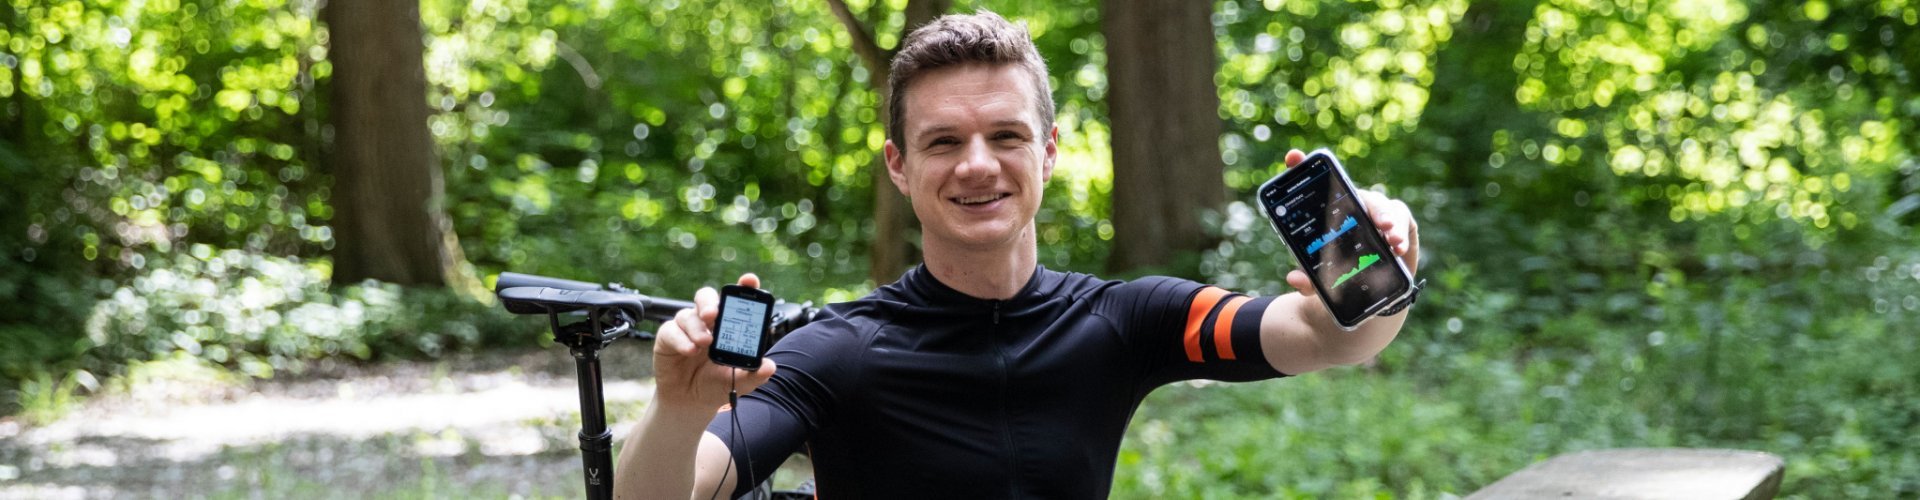 Christof aus dem bc Produktmanagement hält seinen Garmin Edge Fahrradcomputer und sein Smartphone, welches seine Leistungsdaten zeigt, in die Kamera. 